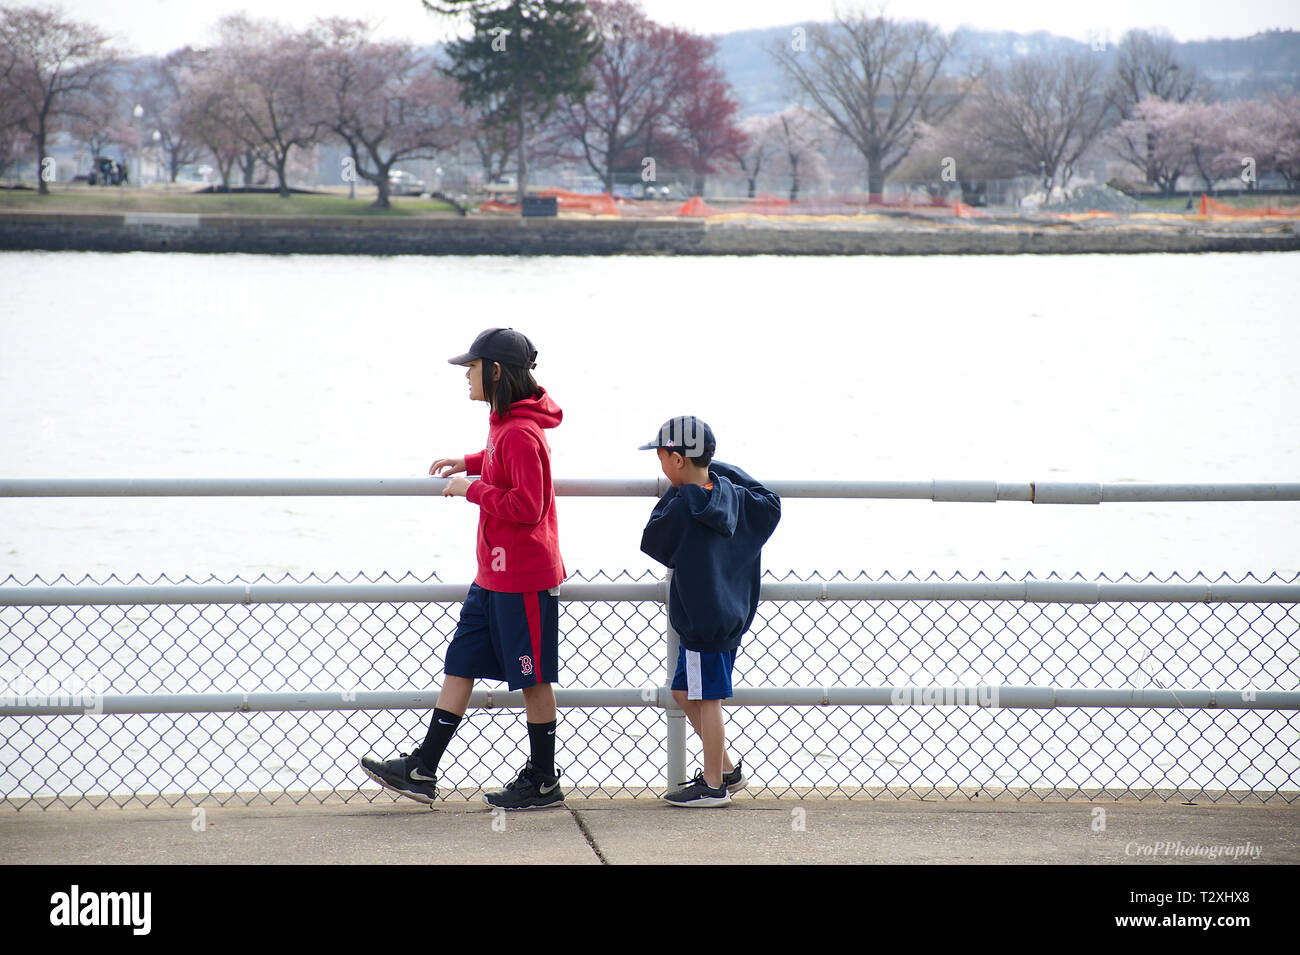 Deux jeunes qui se promenaient dans balustrade près de l'eau Banque D'Images